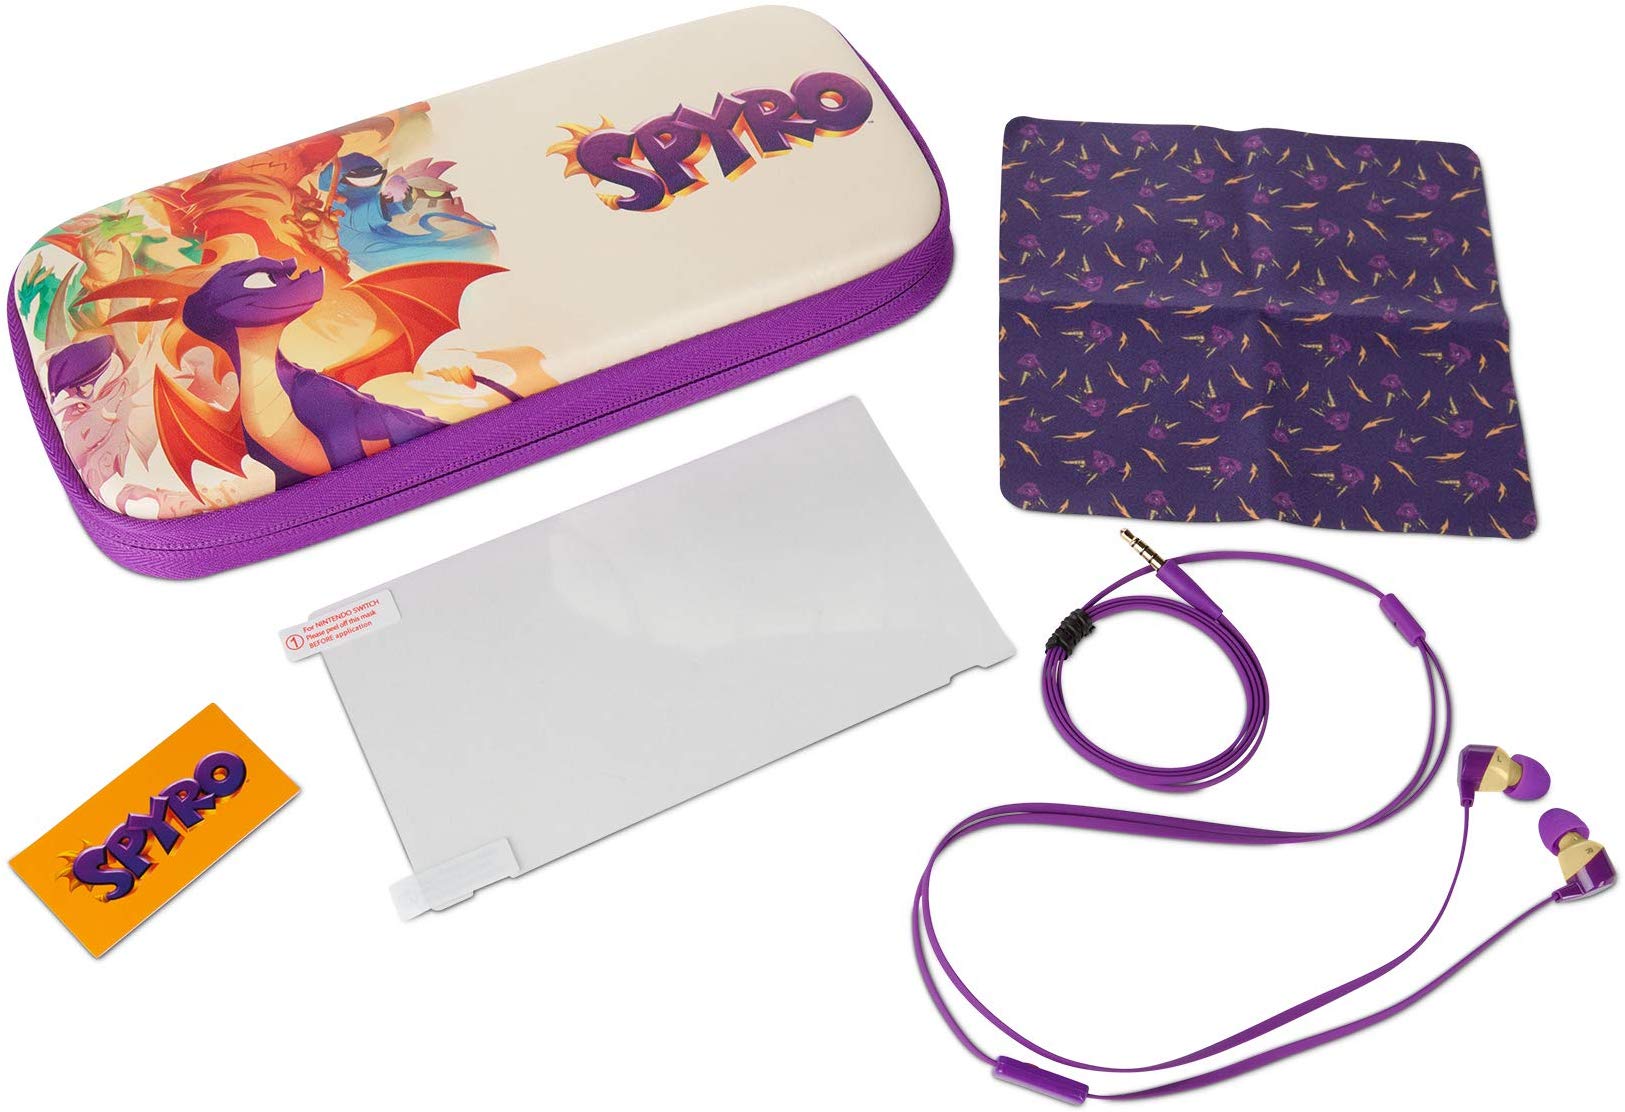 PowerA Spyro Travel Stealth Kit with Case Photo